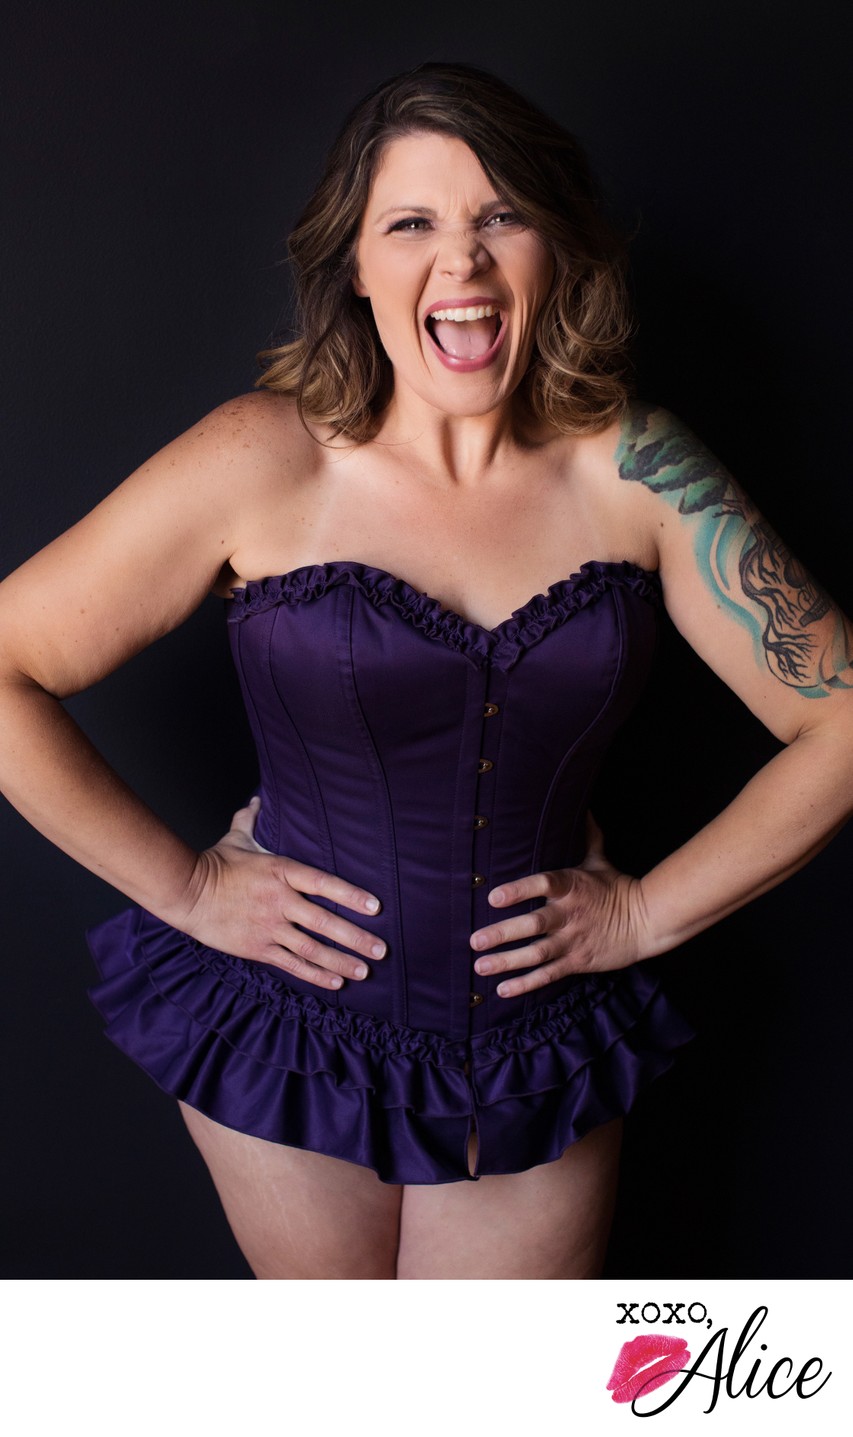 Happy woman wears purple steel boned corset for boudoir